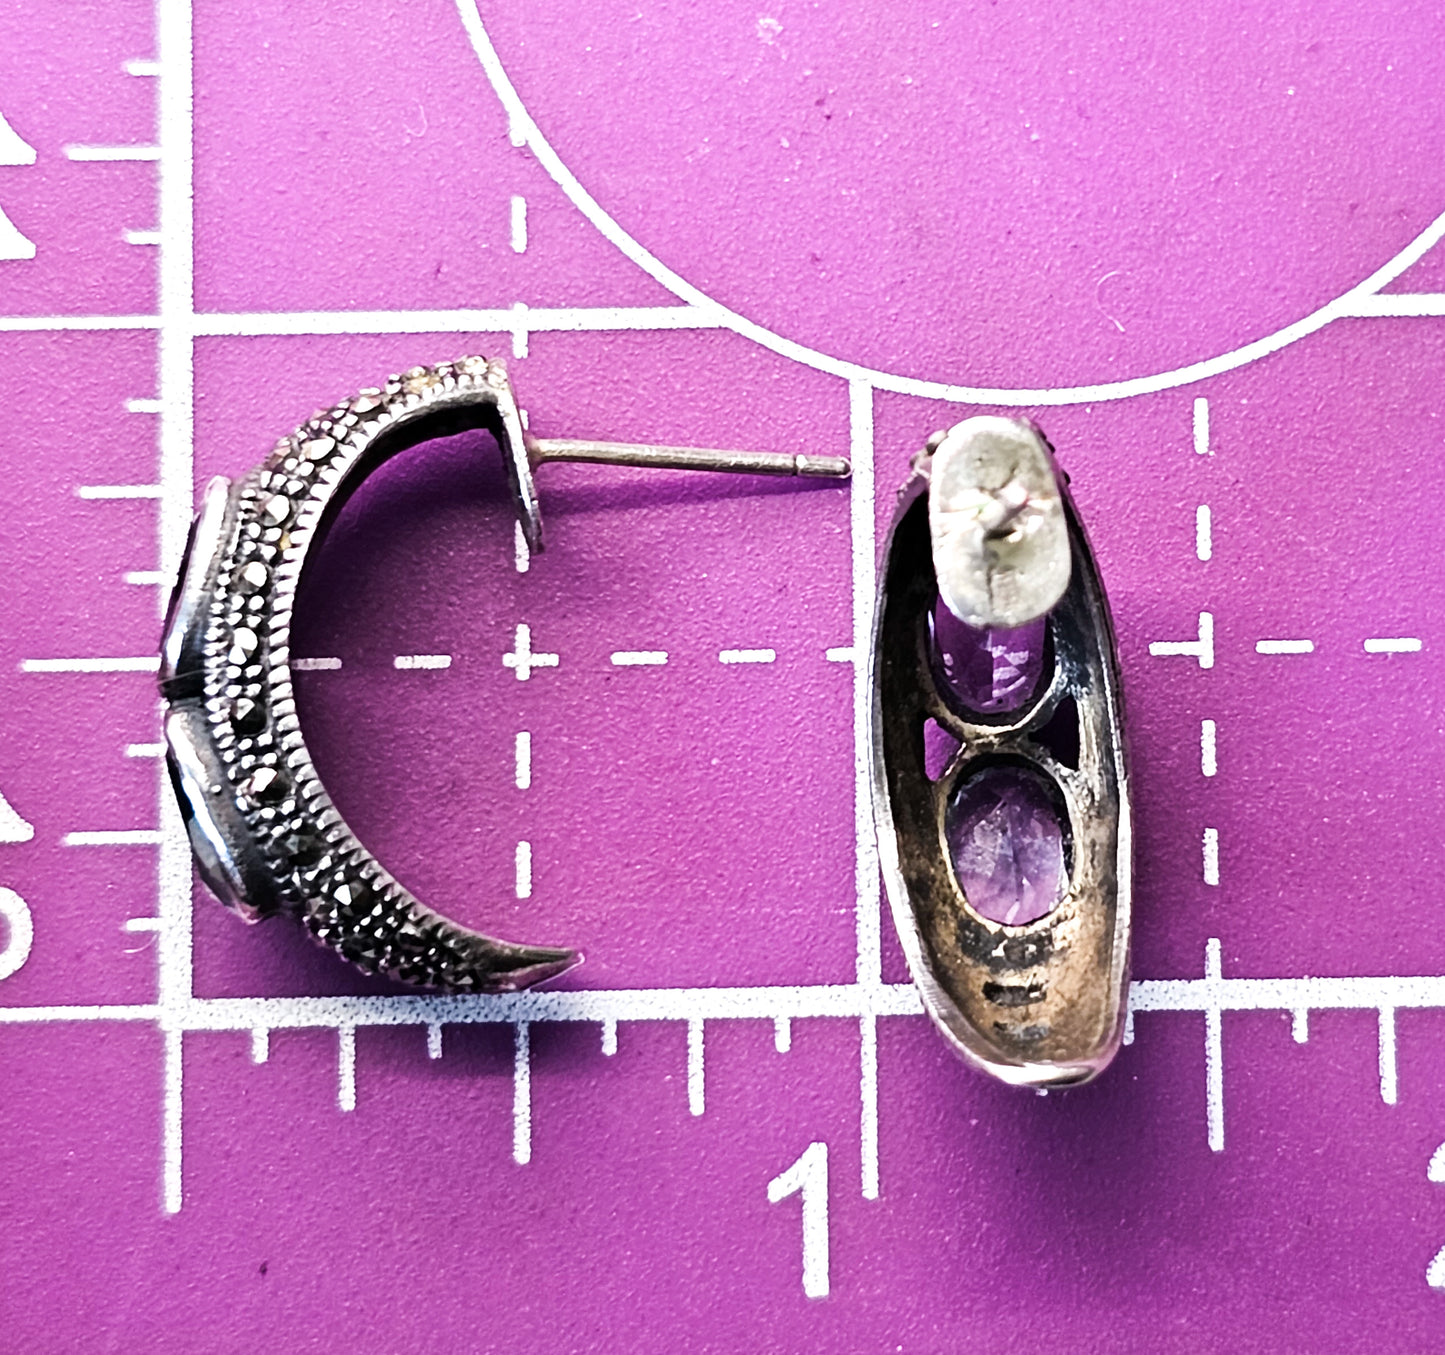 Purple Amethyst and Blue Topaz Marcasite vintage sterling silver hoop earrings